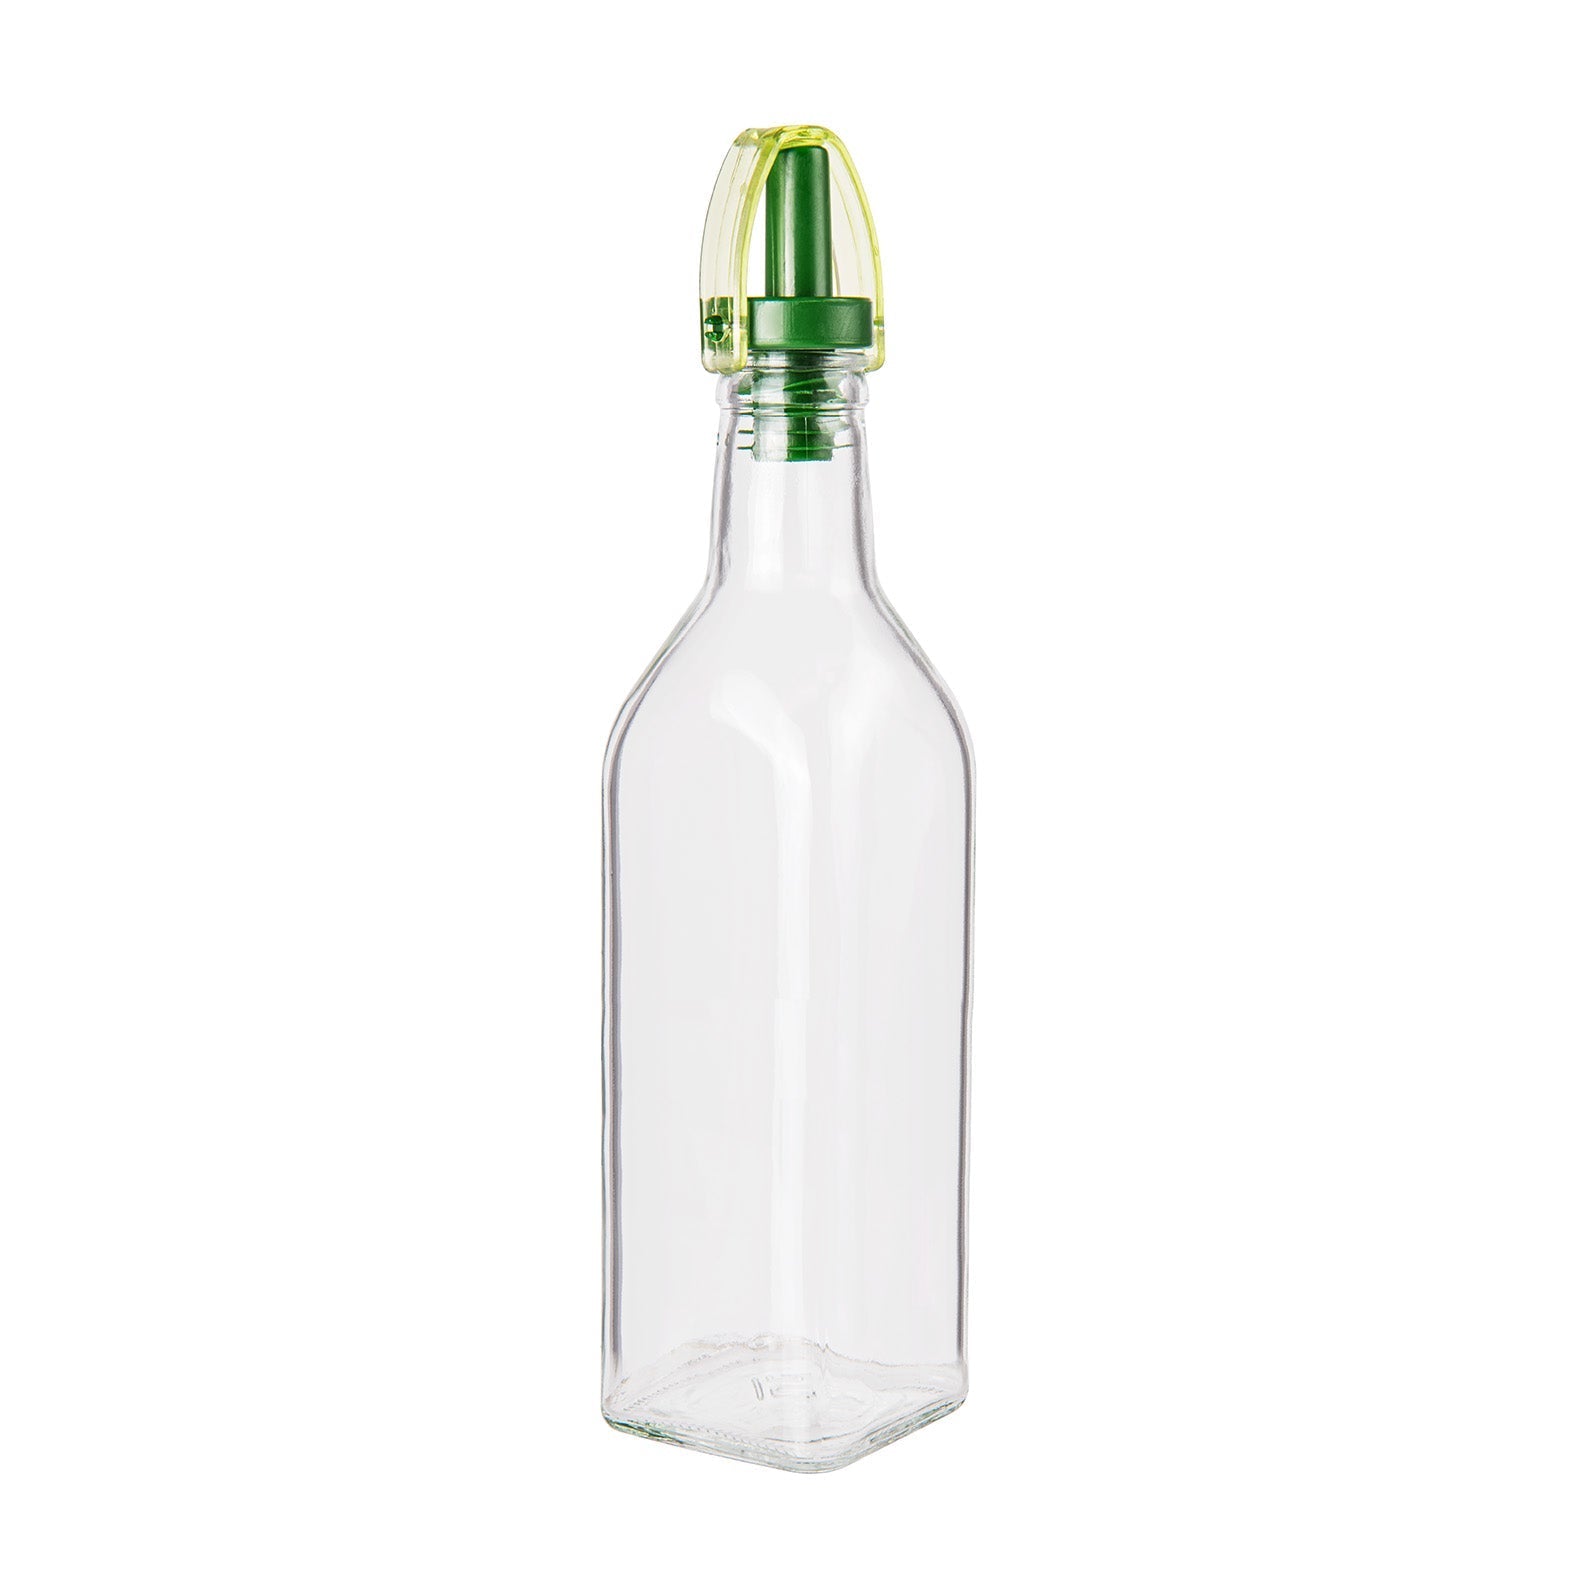 Bottiglia In Vetro Con Dosatore Per Olio  o Aceto - 250ml